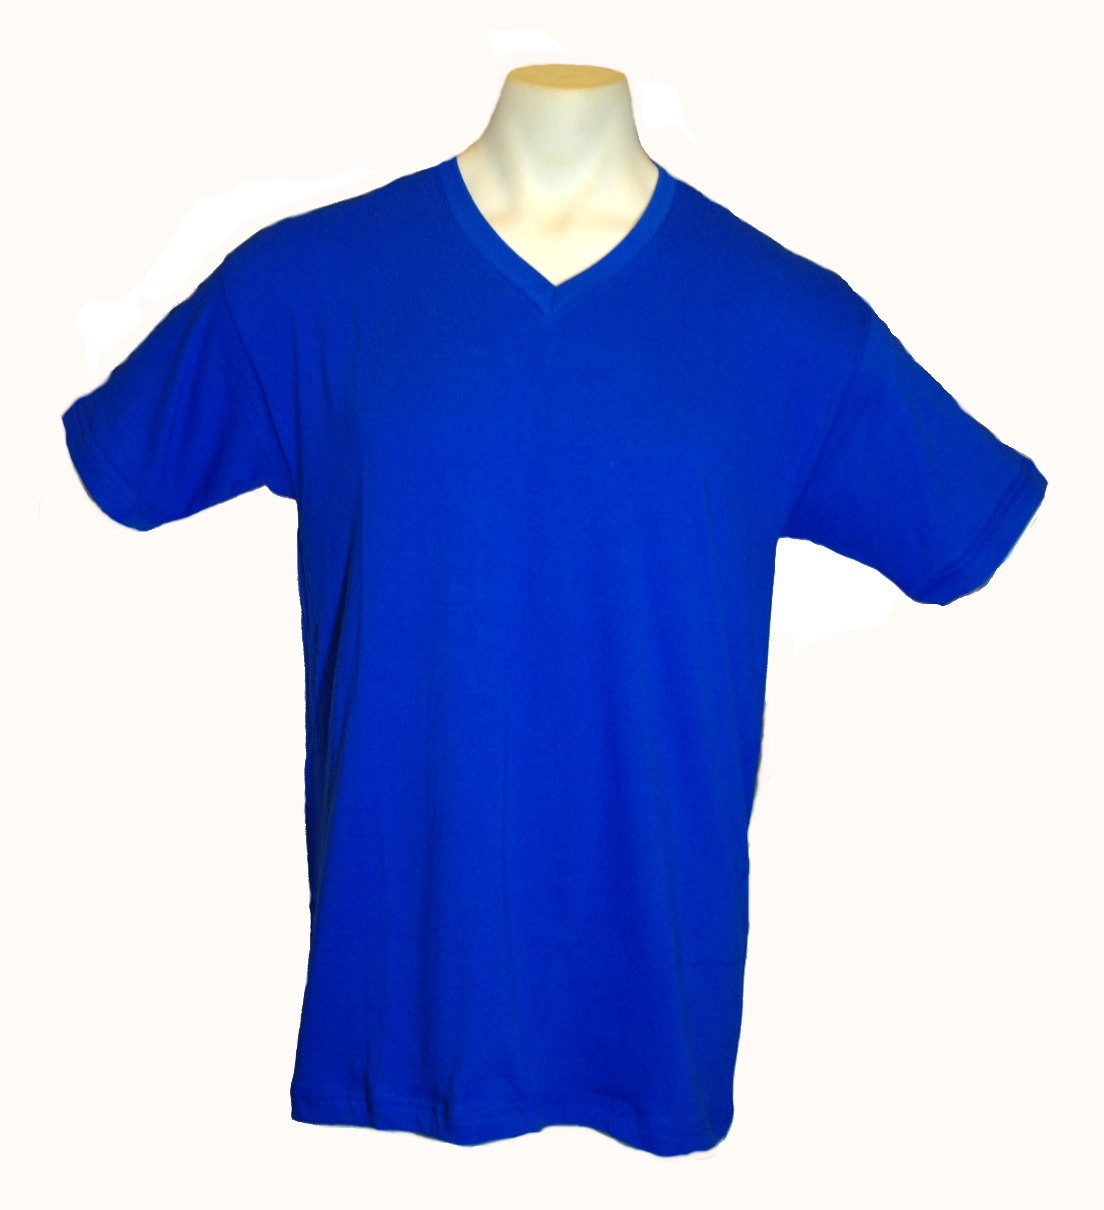 royal blue plain shirt